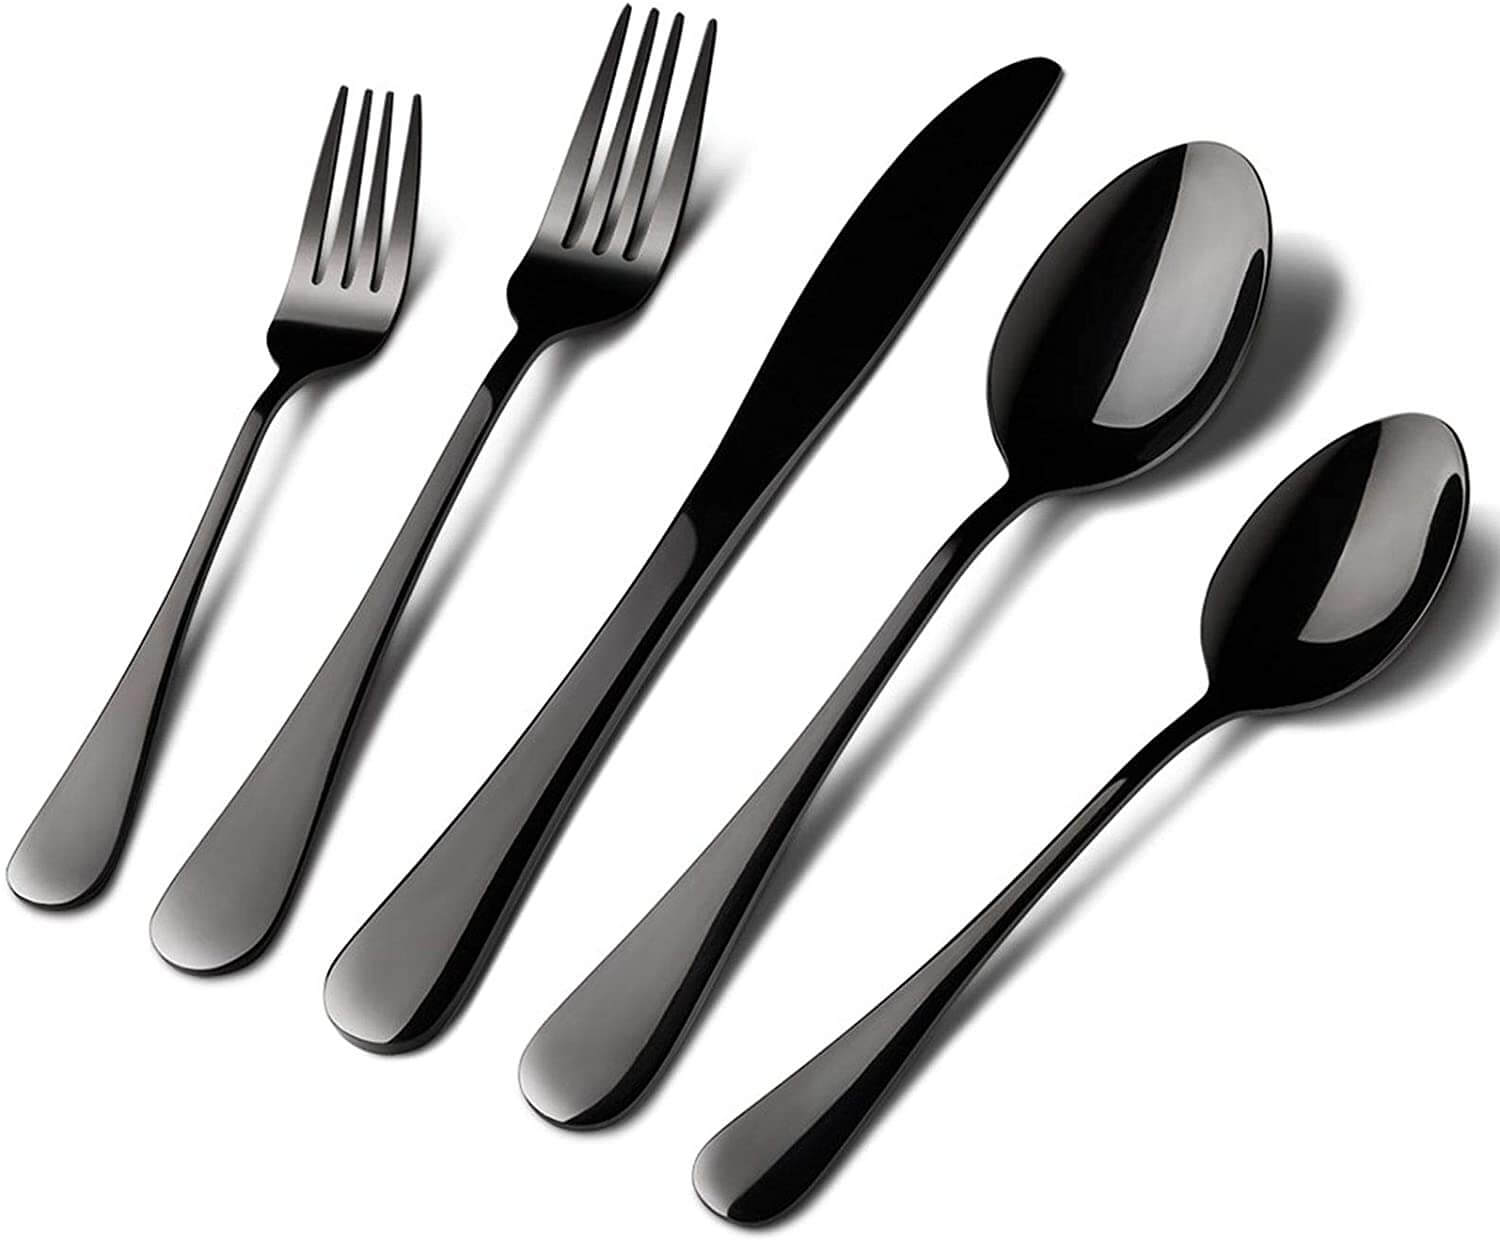 40 Pcs Black Stainless Steel Dishwasher Safe Silverware Flatware Cutlery Set Serve for 8 - Bevelse